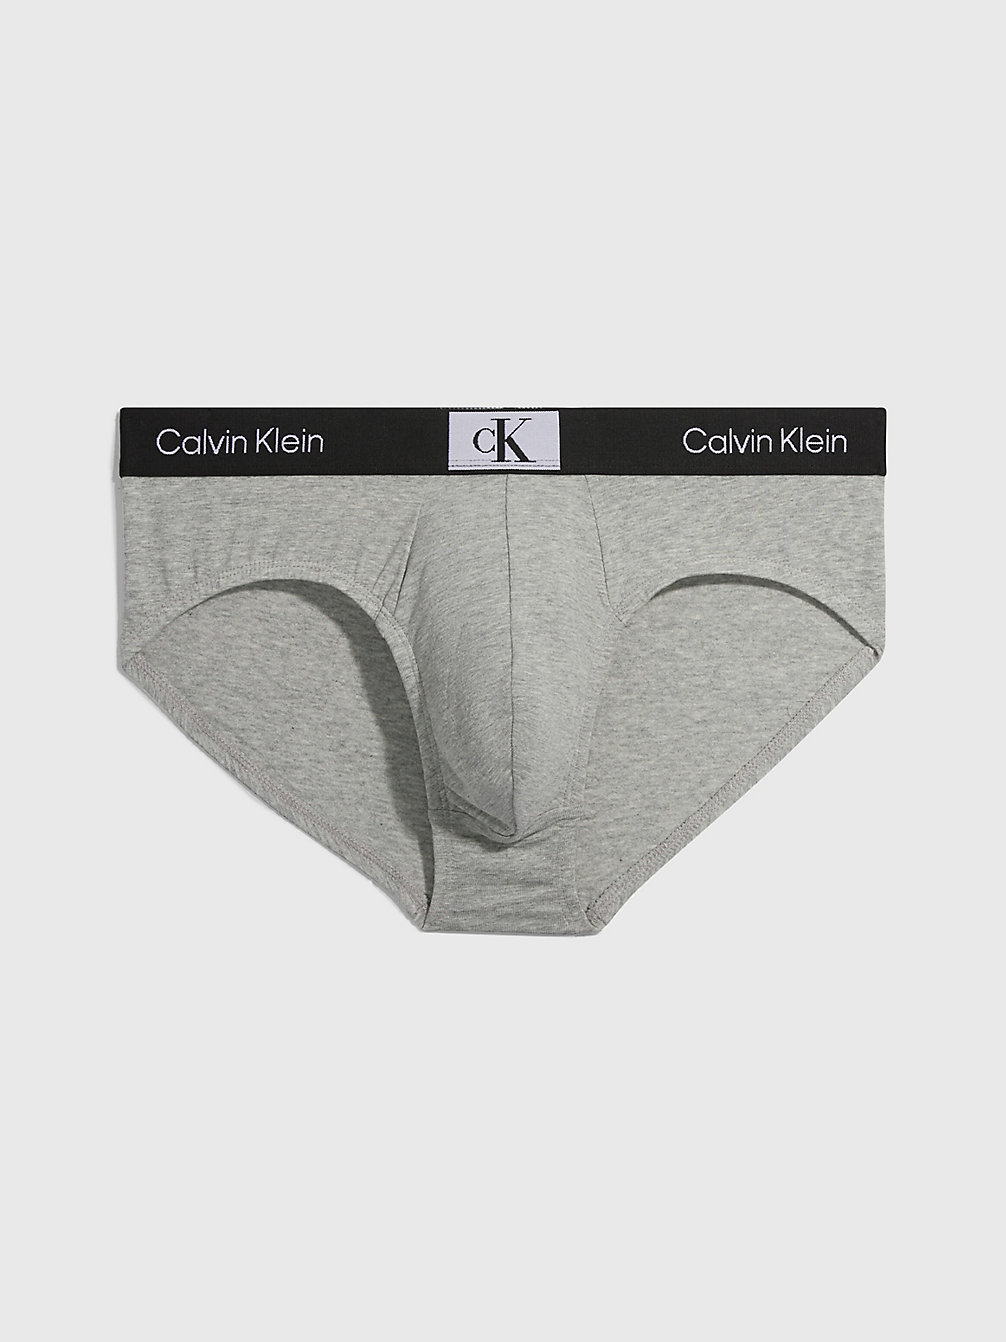 GREY HEATHER Slips - Ck96 undefined Herren Calvin Klein